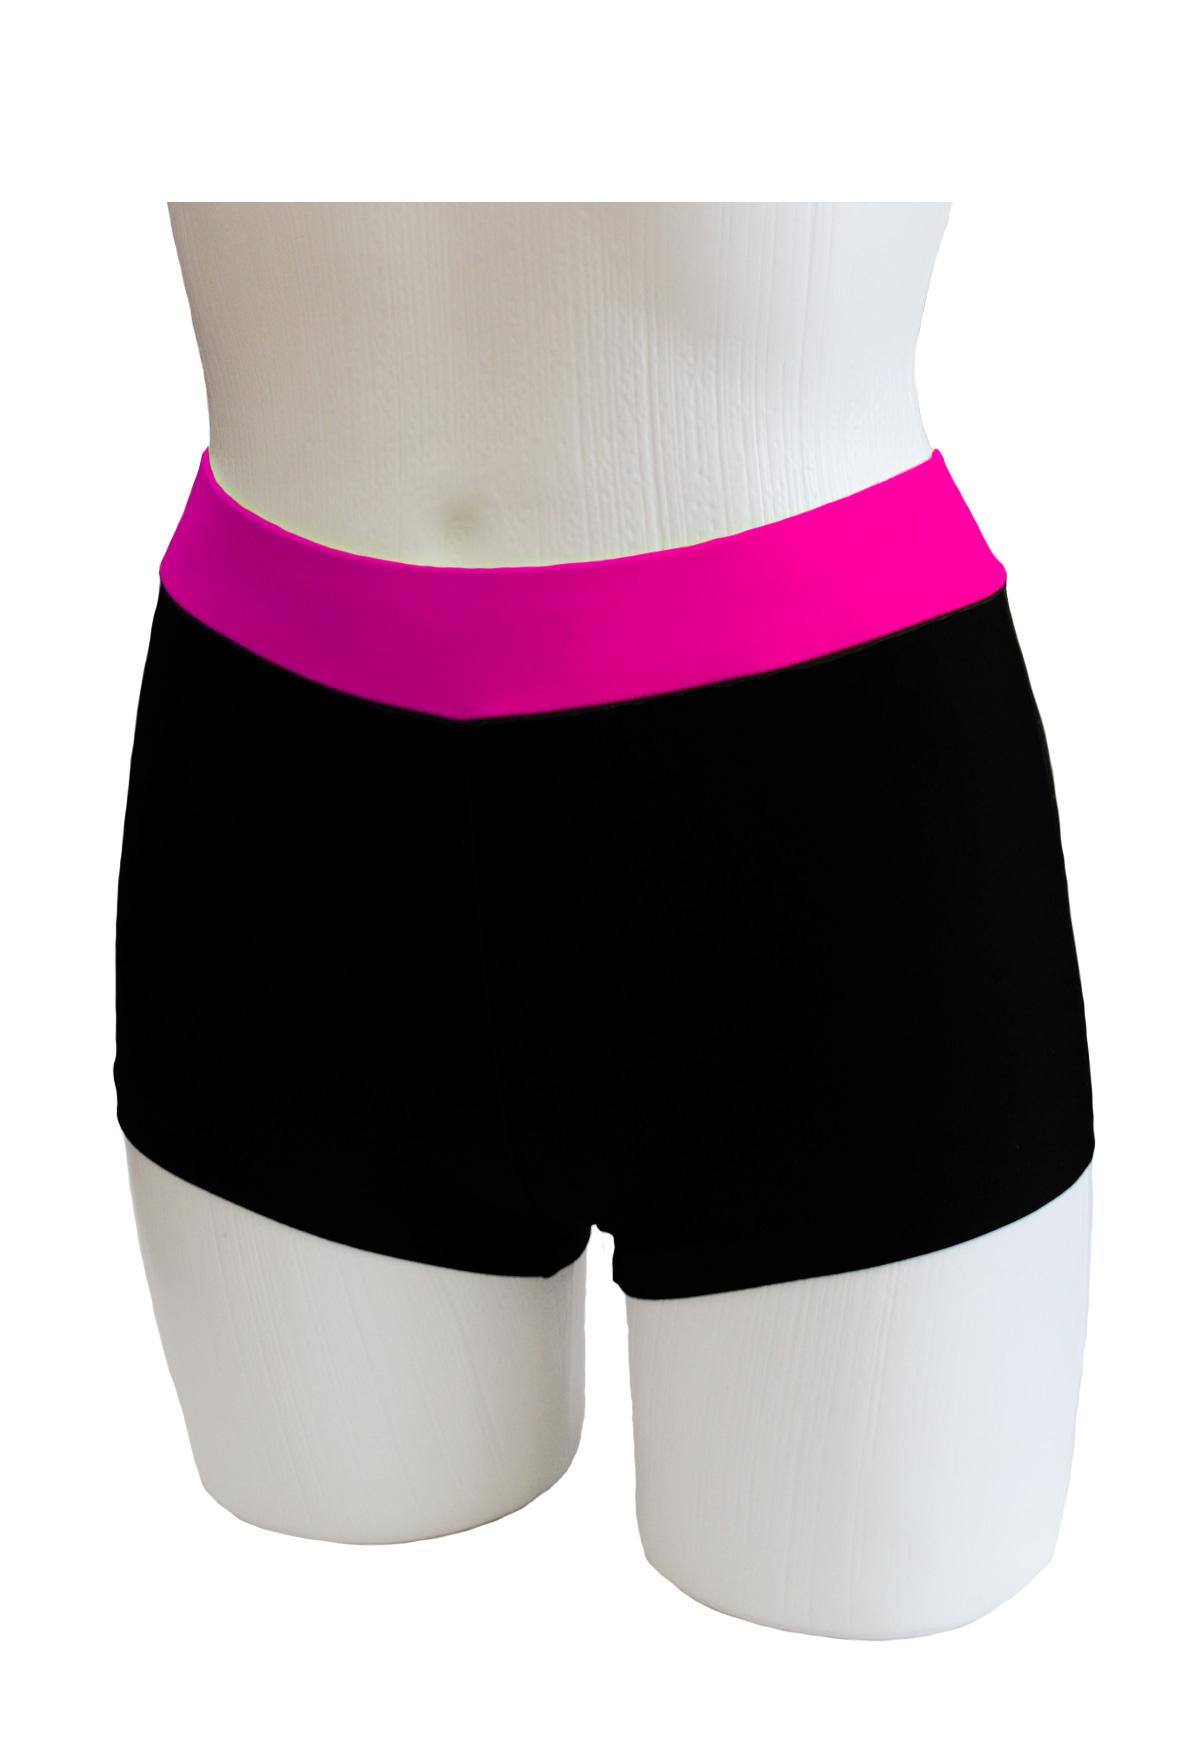 Шорты женские для спортивной гимнастики GK Sport ШКМ3.1Ф черные с поясом фуксия